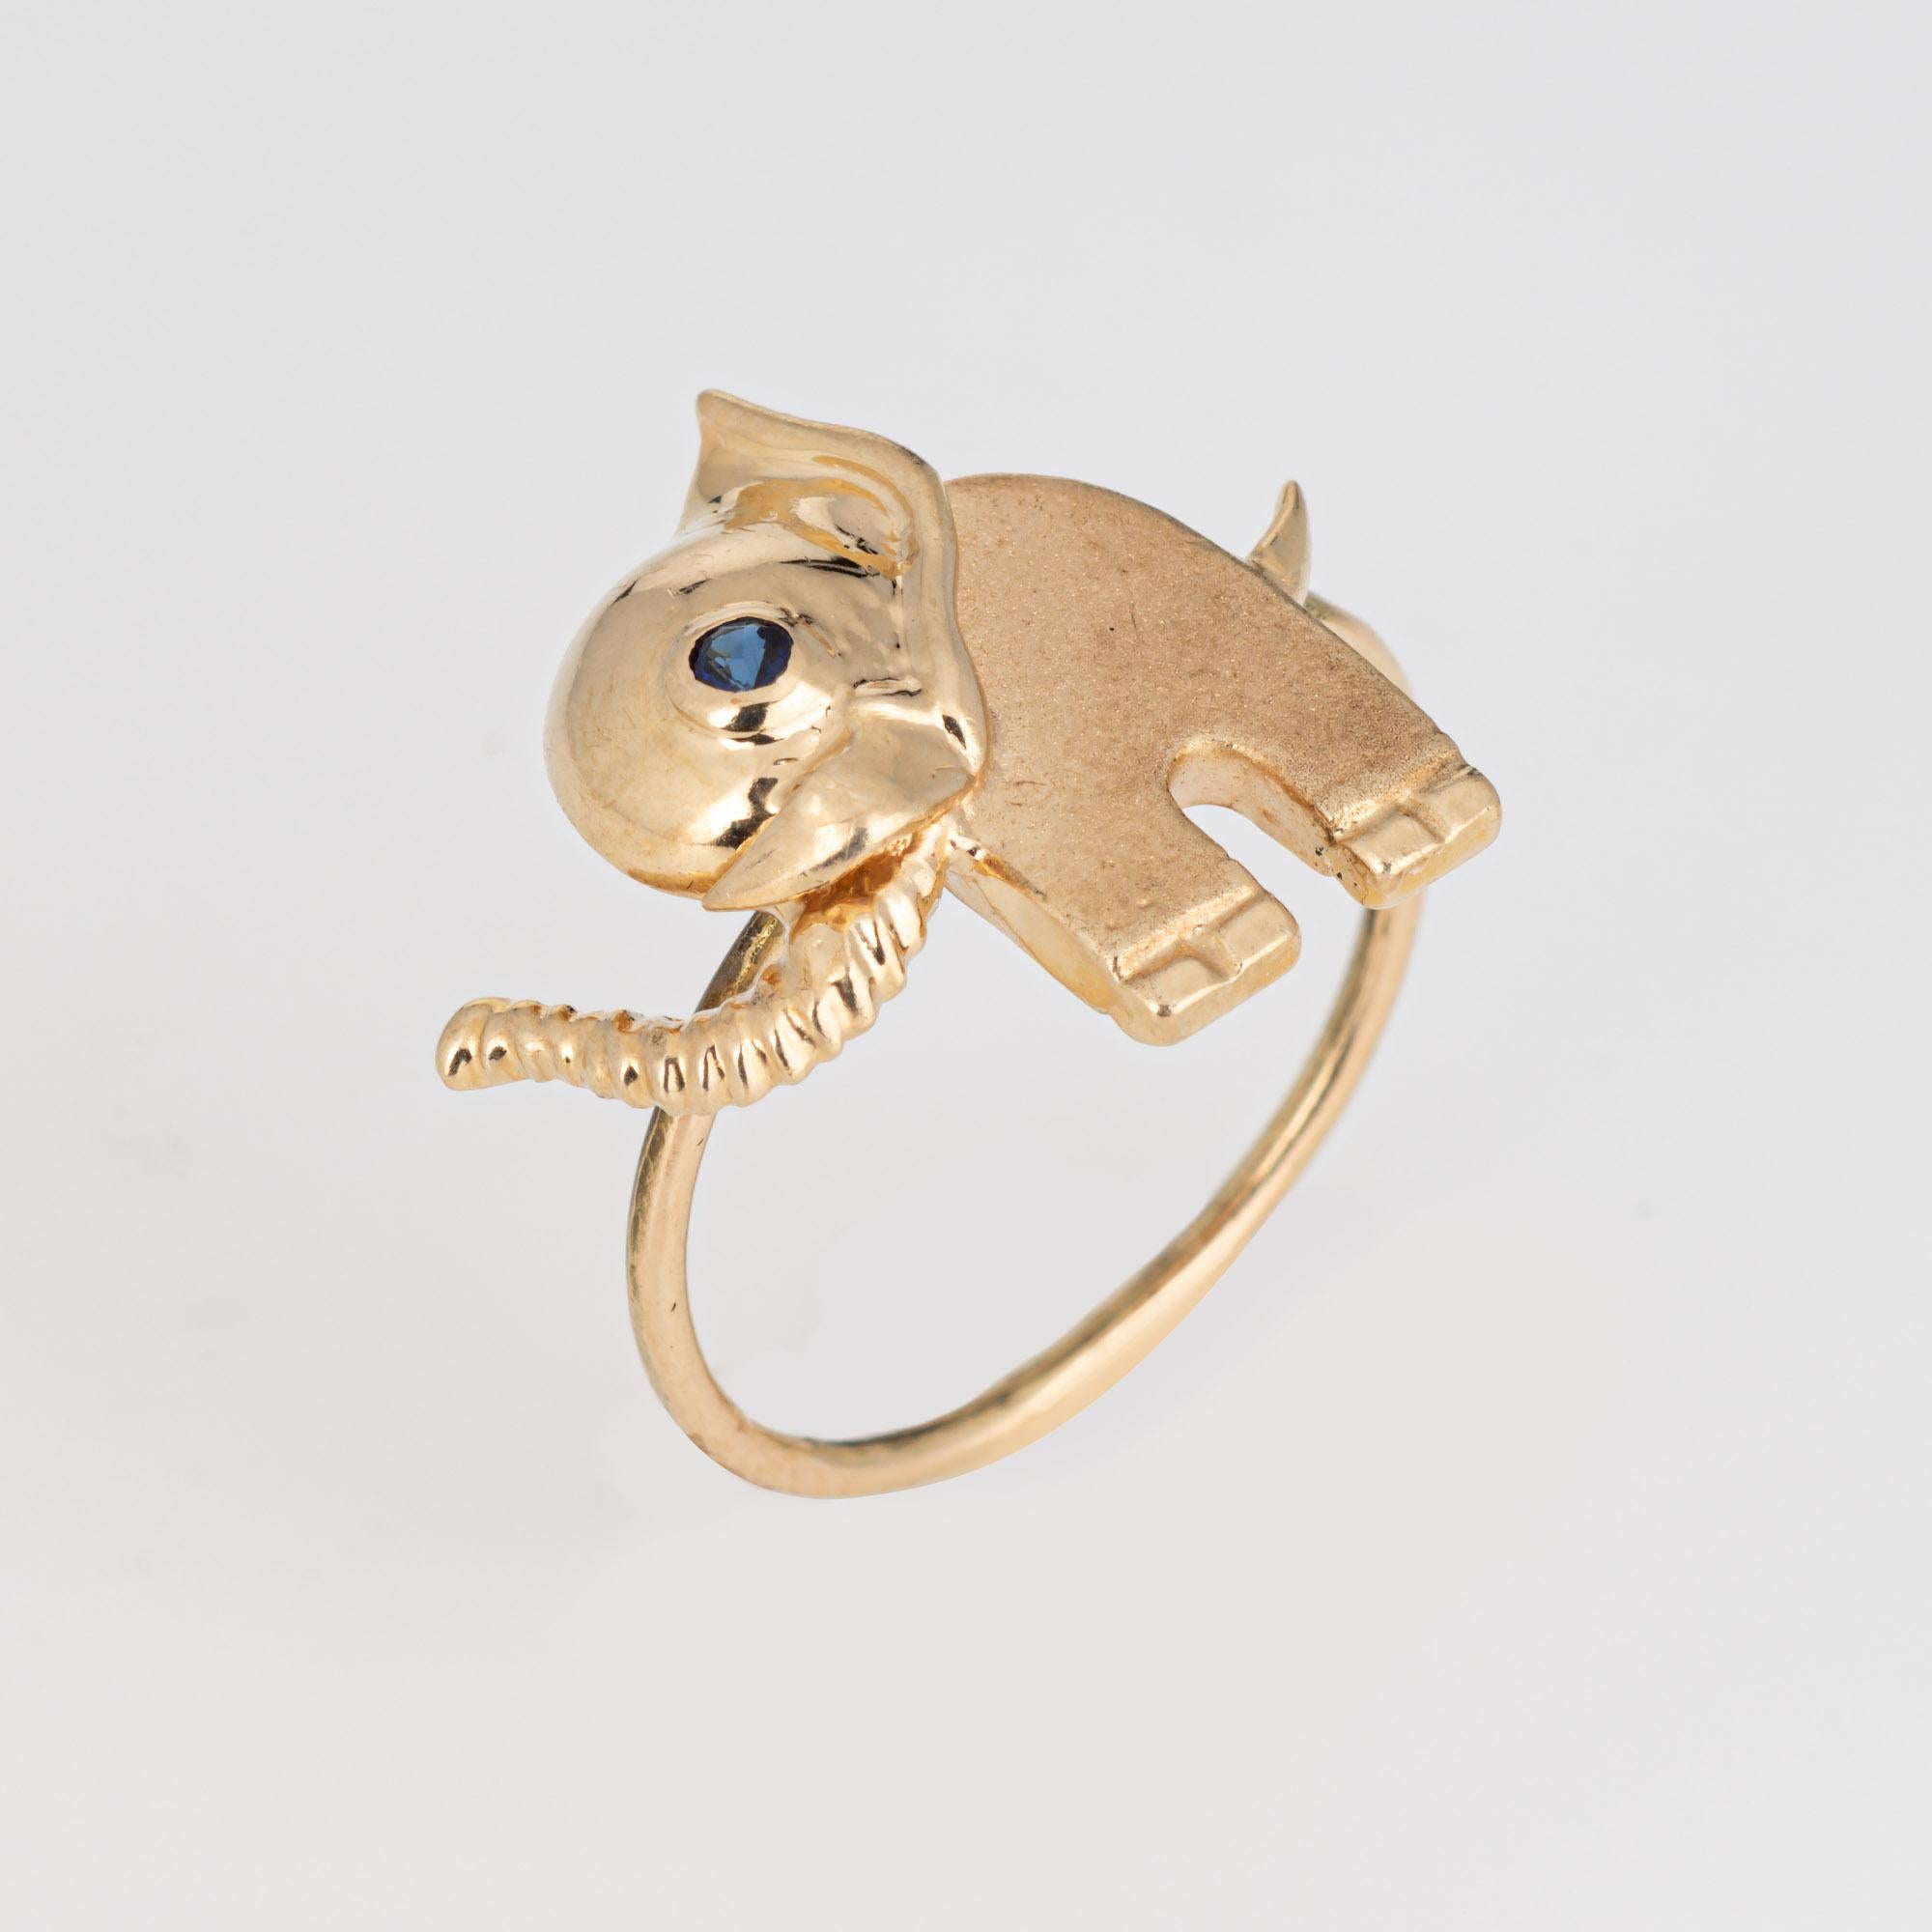 Der Elefantenring ist aus 14-karätigem Gelbgold gefertigt und war ursprünglich eine alte Stecknadel.

Der Ring ist mit dem originalen Steckstift befestigt. Unser Juwelier hat die Stecknadel zu einem schmalen Band für den Finger abgerundet. Der